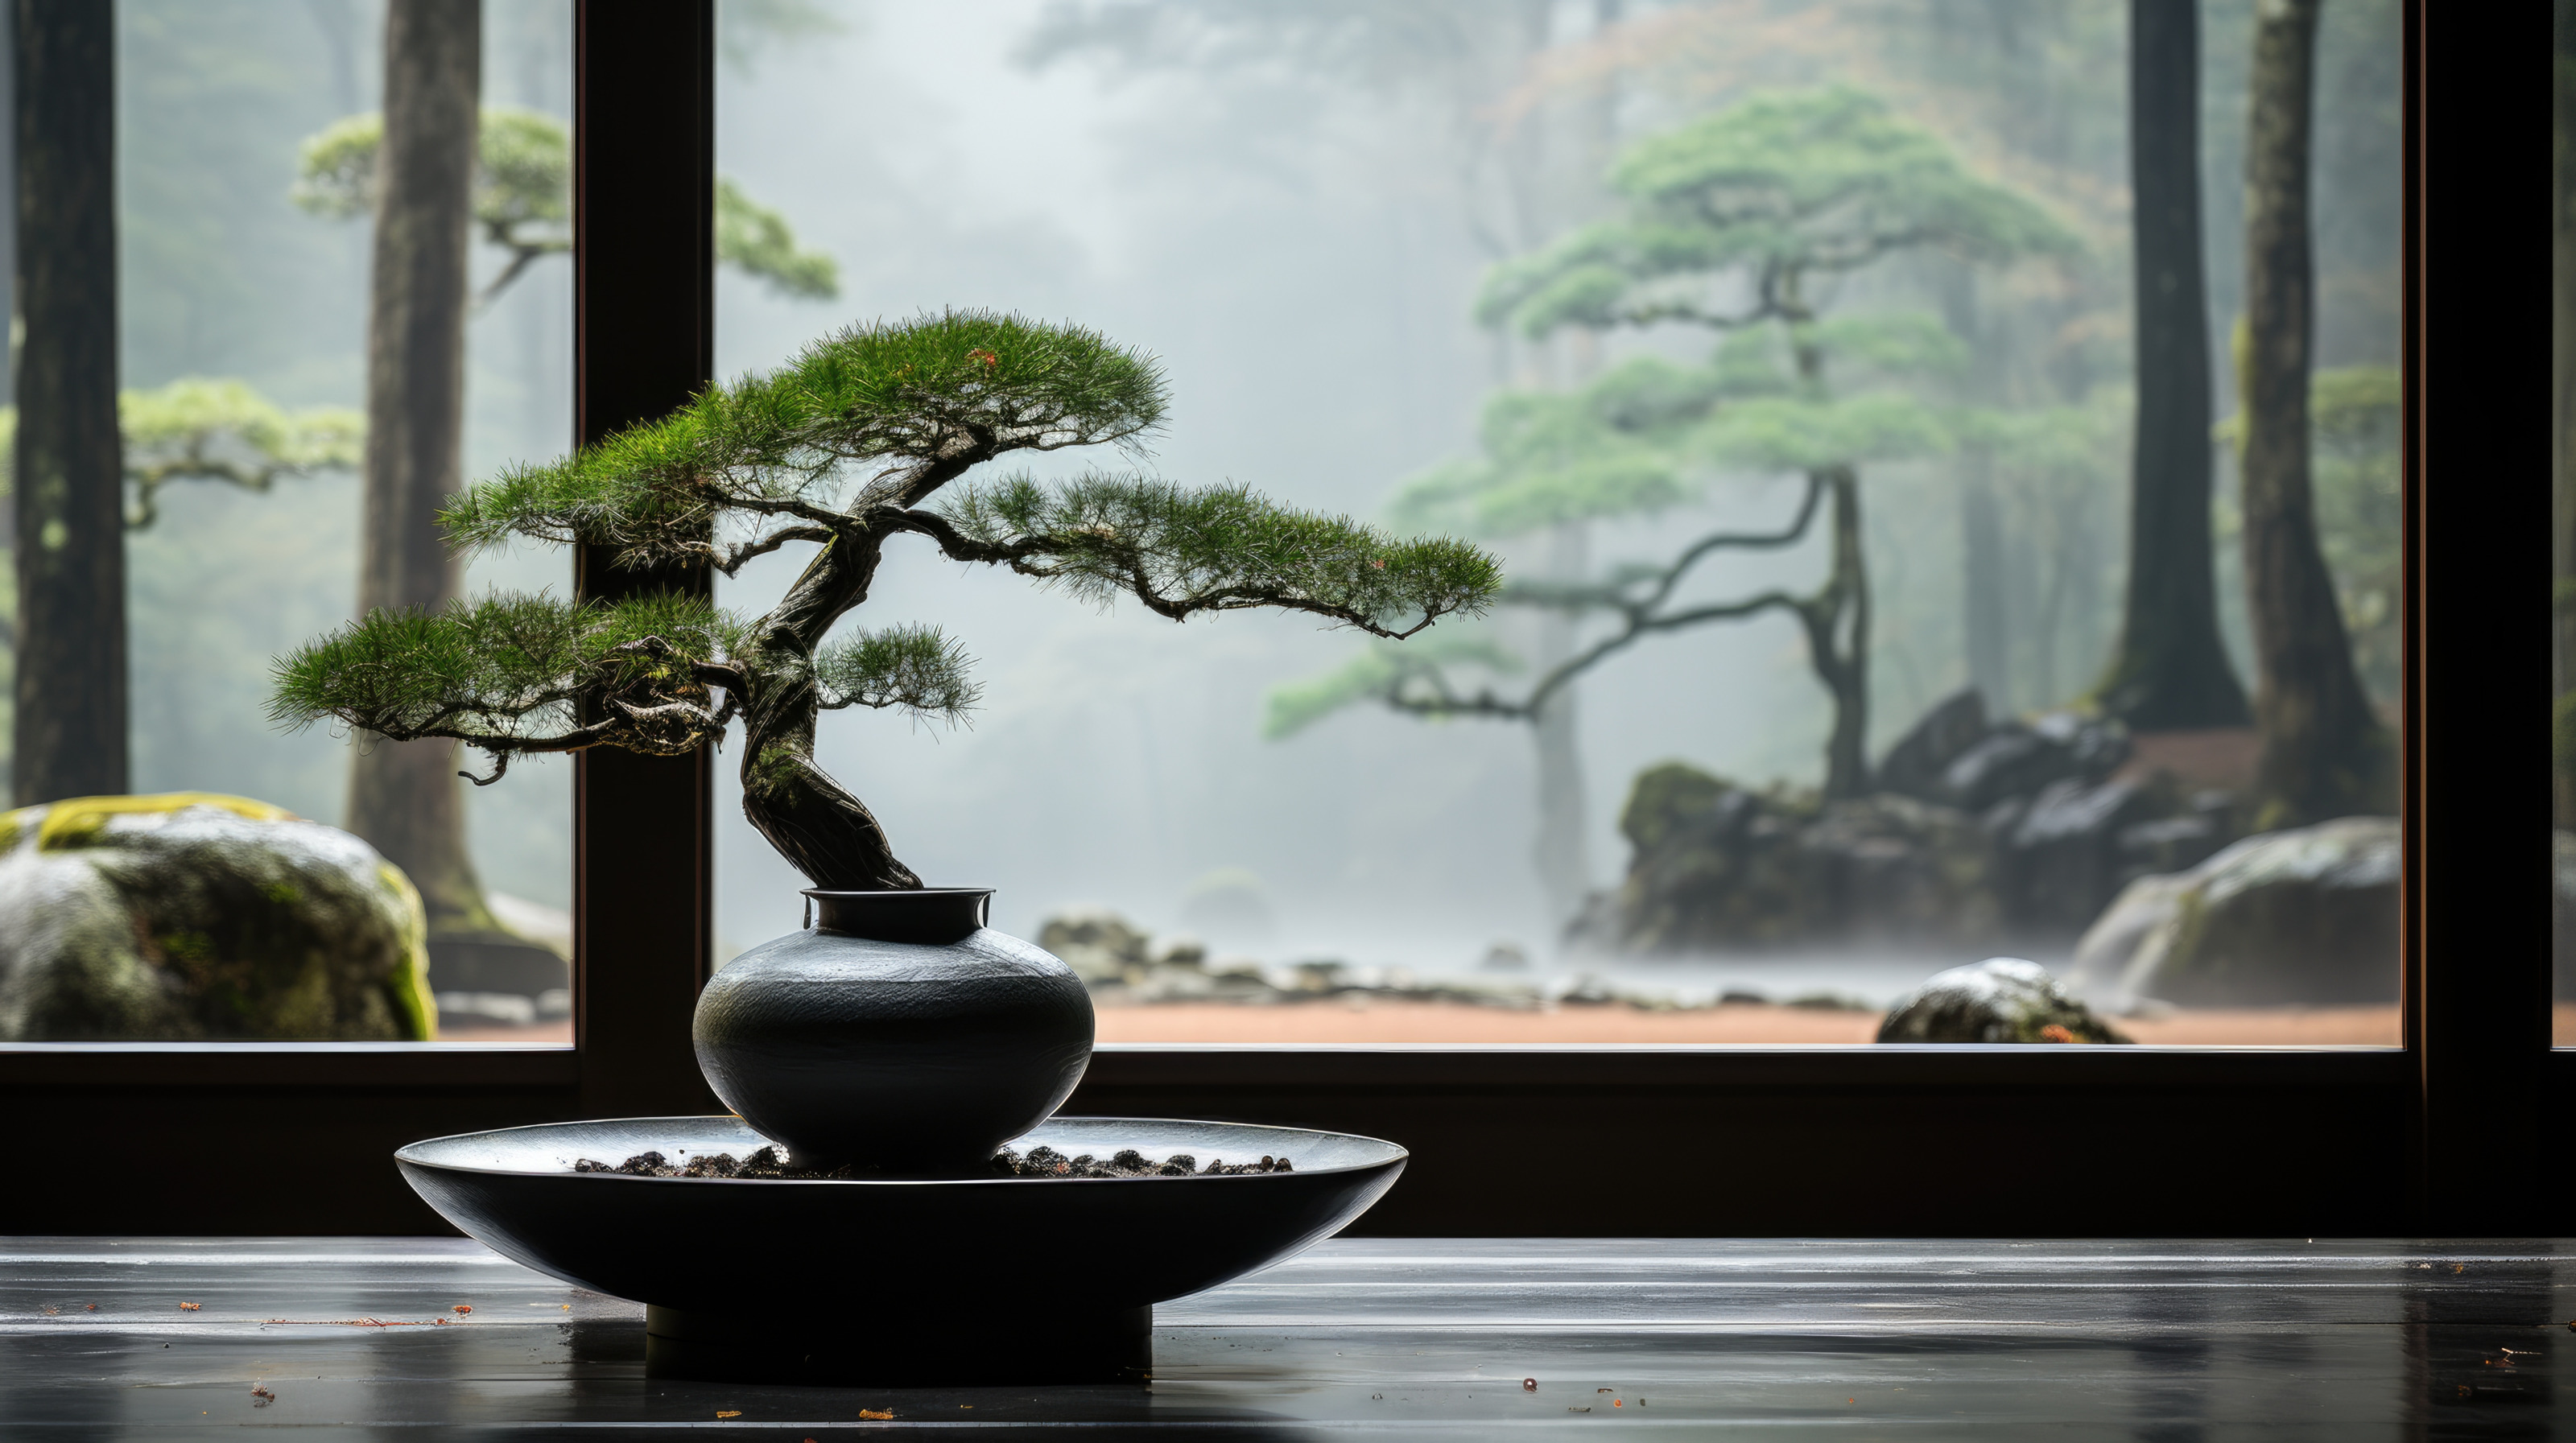 Zen Garten in Japan mit Blick durch eine Glasscheibe in einen Wald